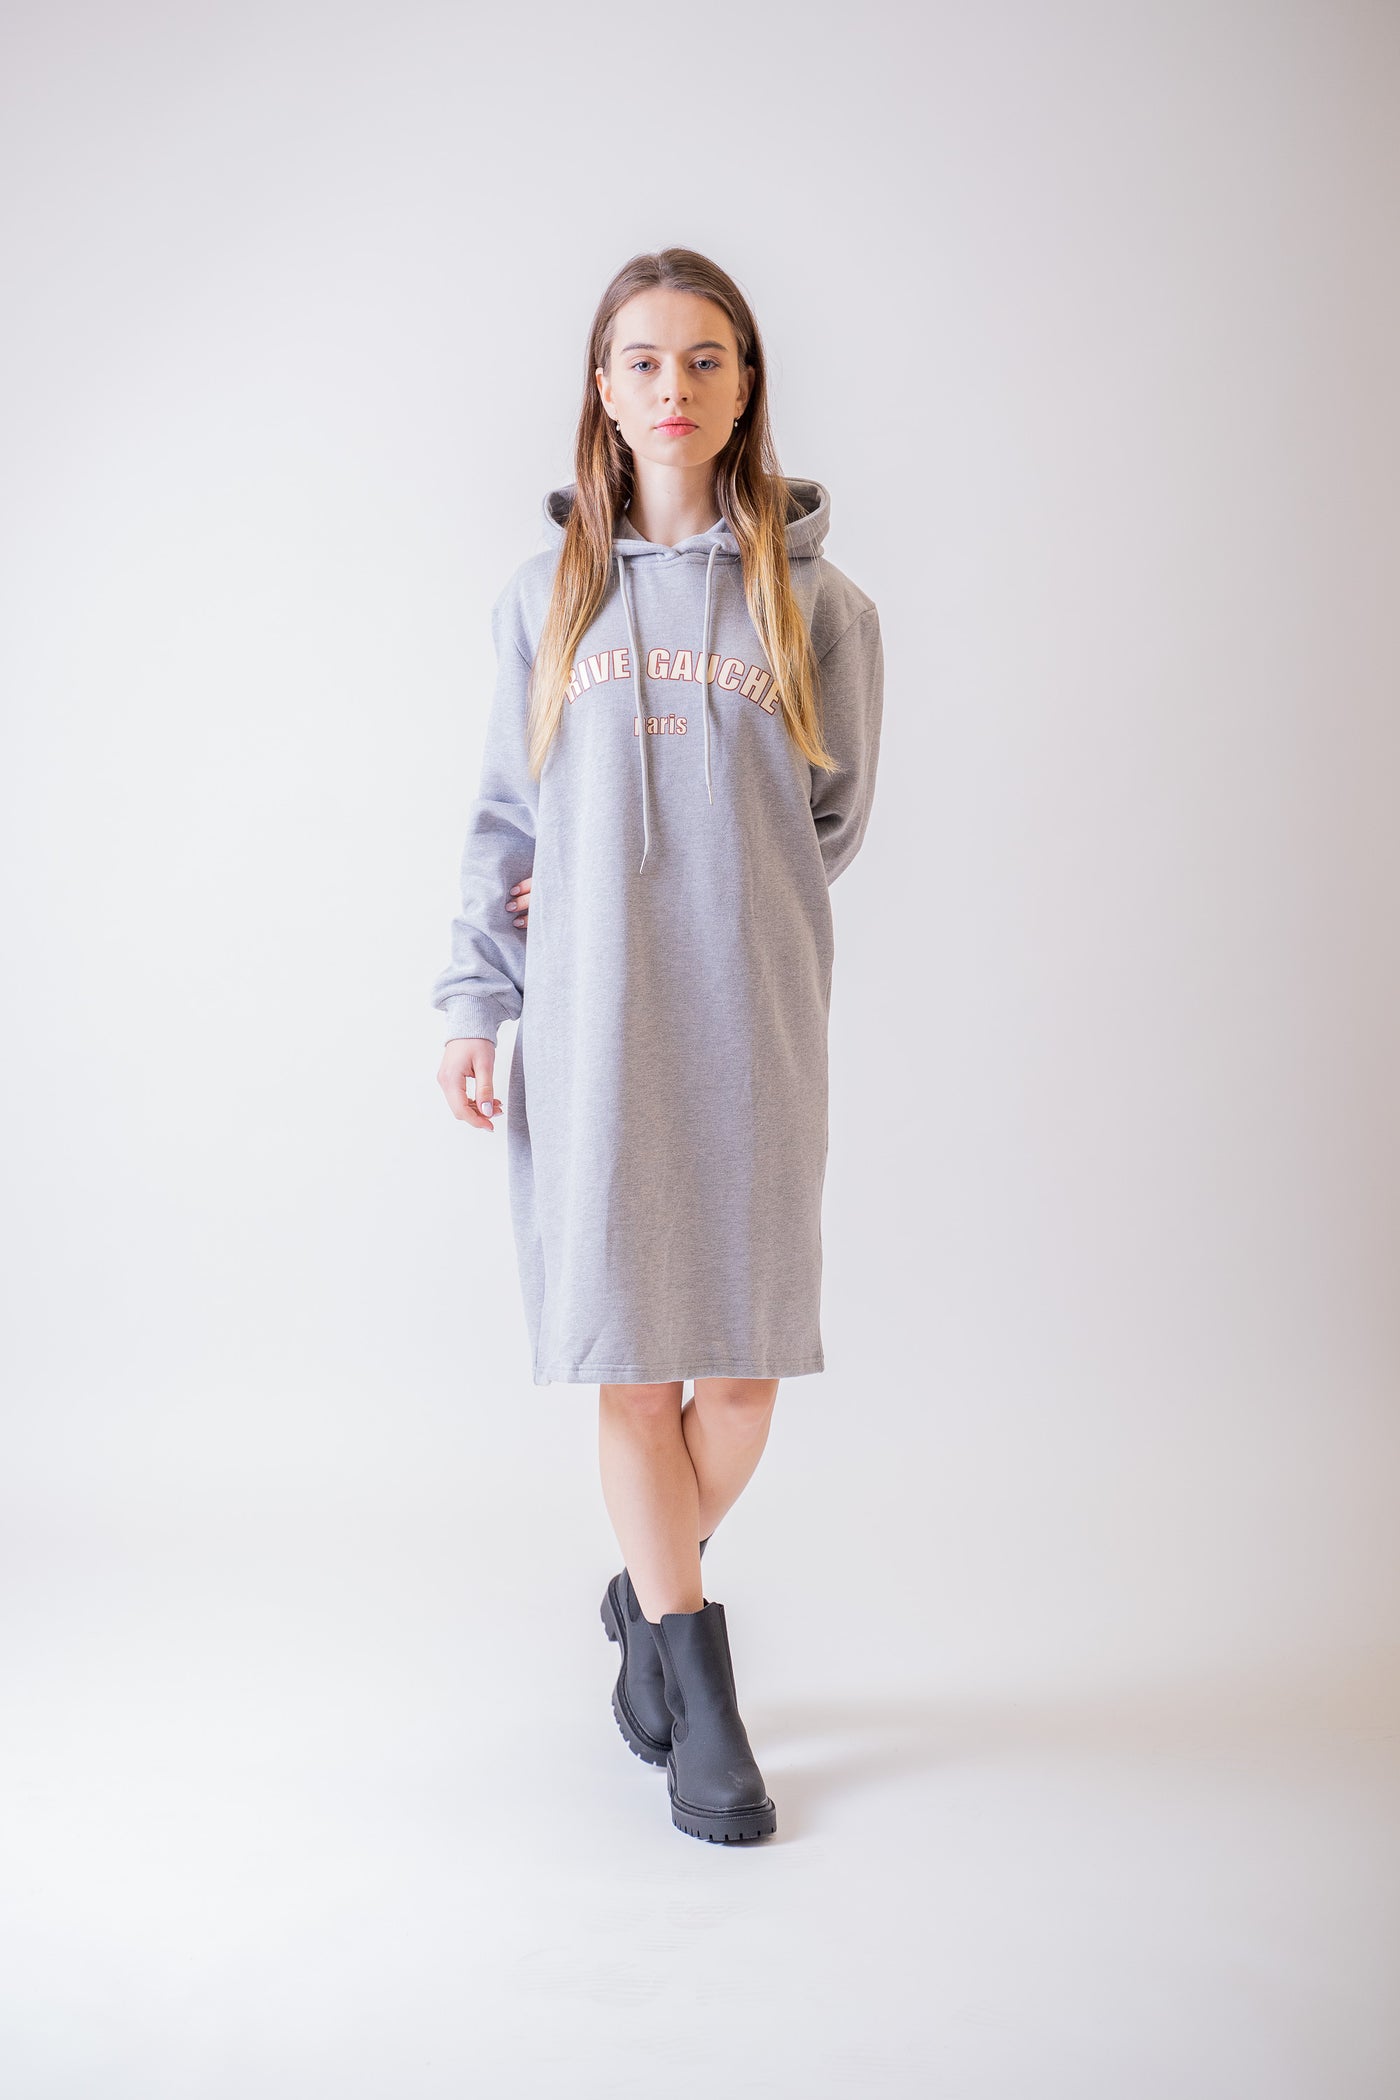 Sivé šaty s kapucňou - Šaty